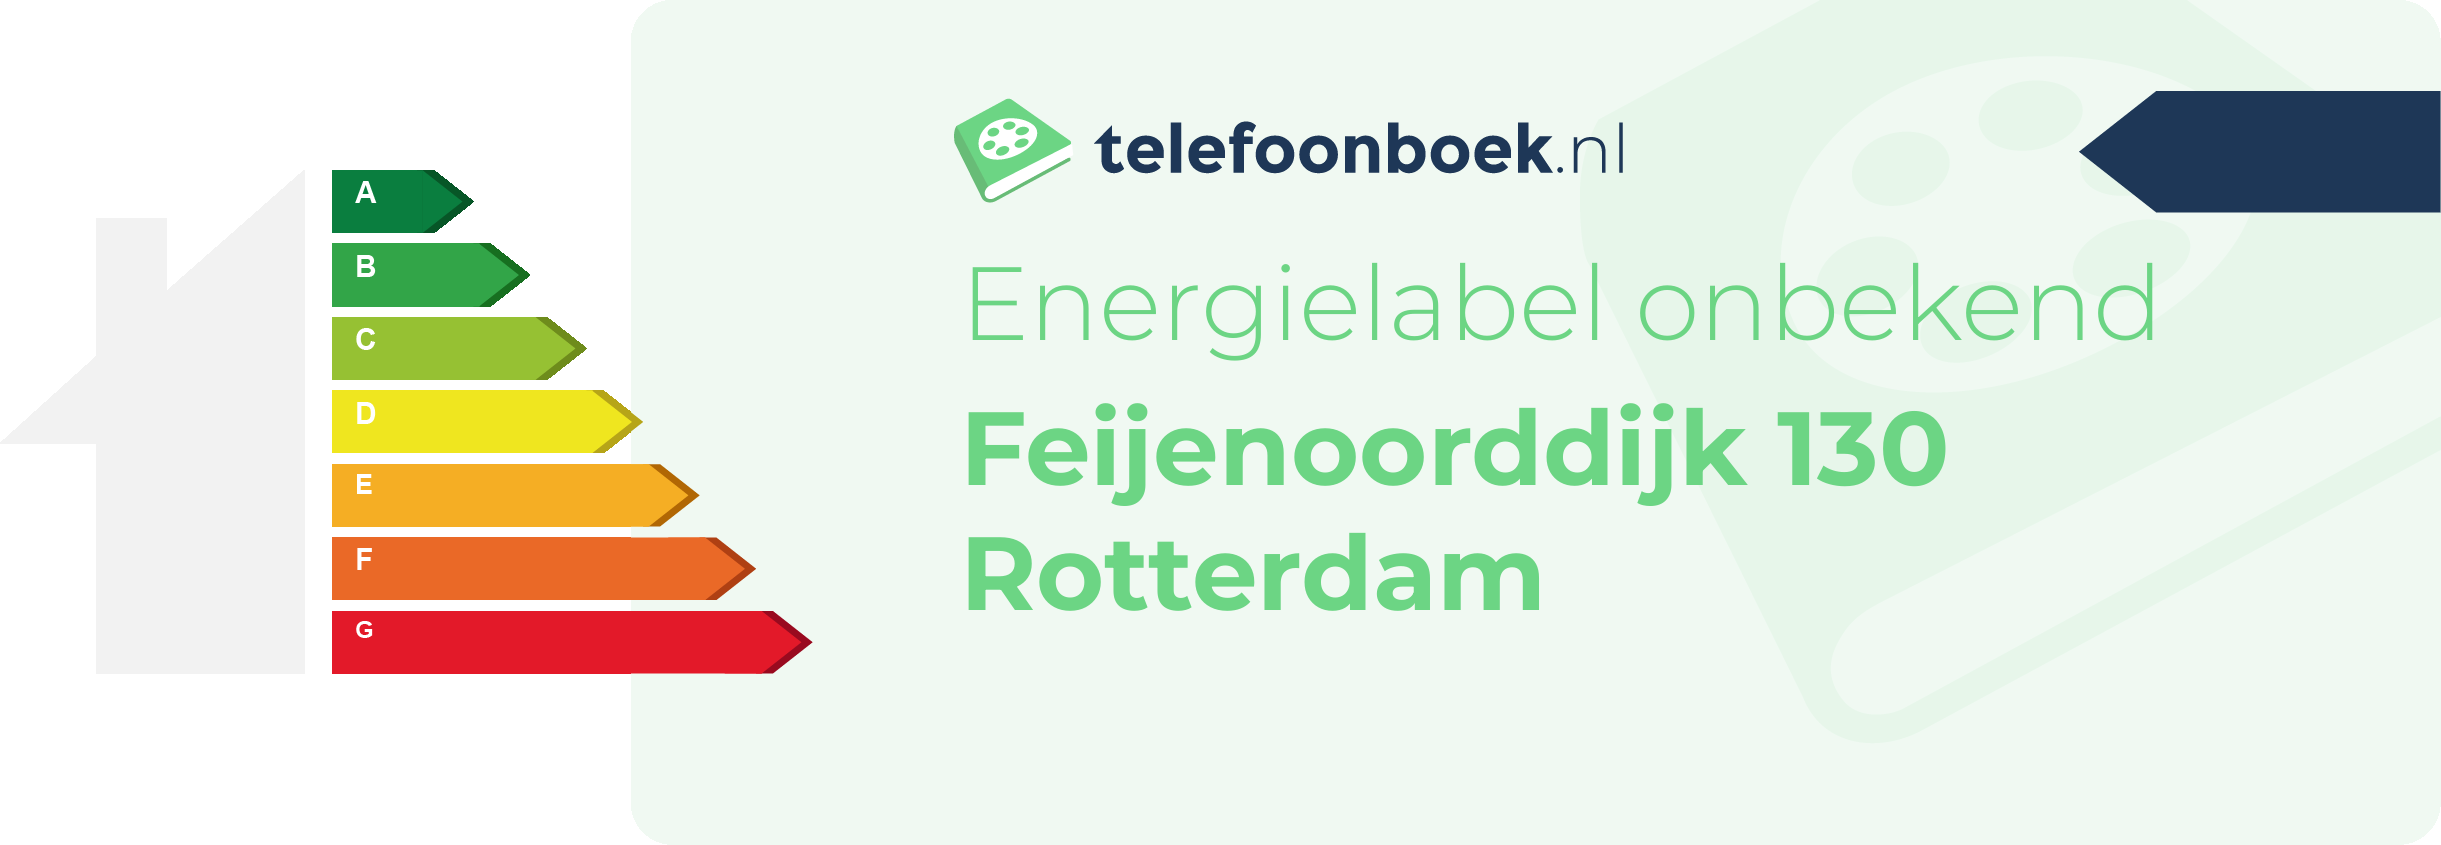 Energielabel Feijenoorddijk 130 Rotterdam